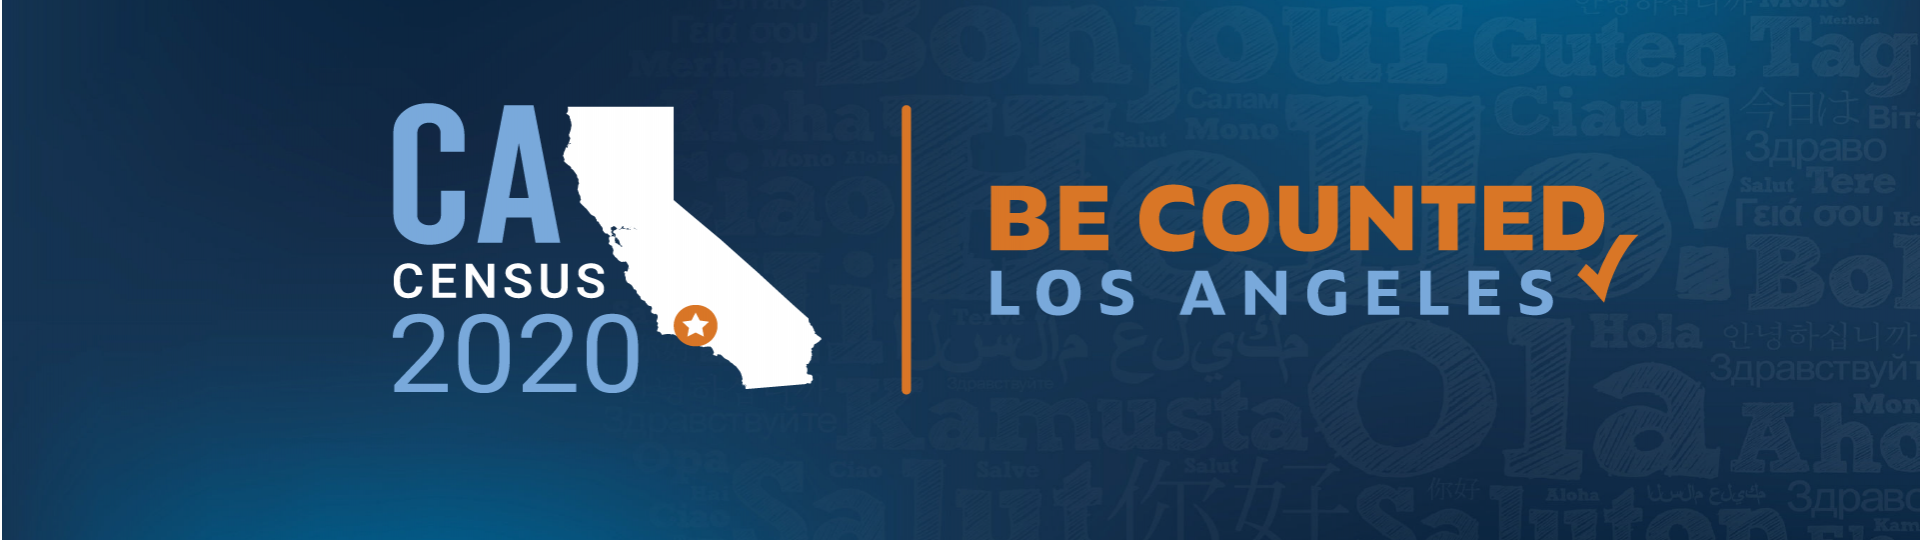 Логотип с изображением карты Калифорнии с текстом Перепись населения 2020 Зарегистрируйтесь в списках для подсчета населения Los Angeles.